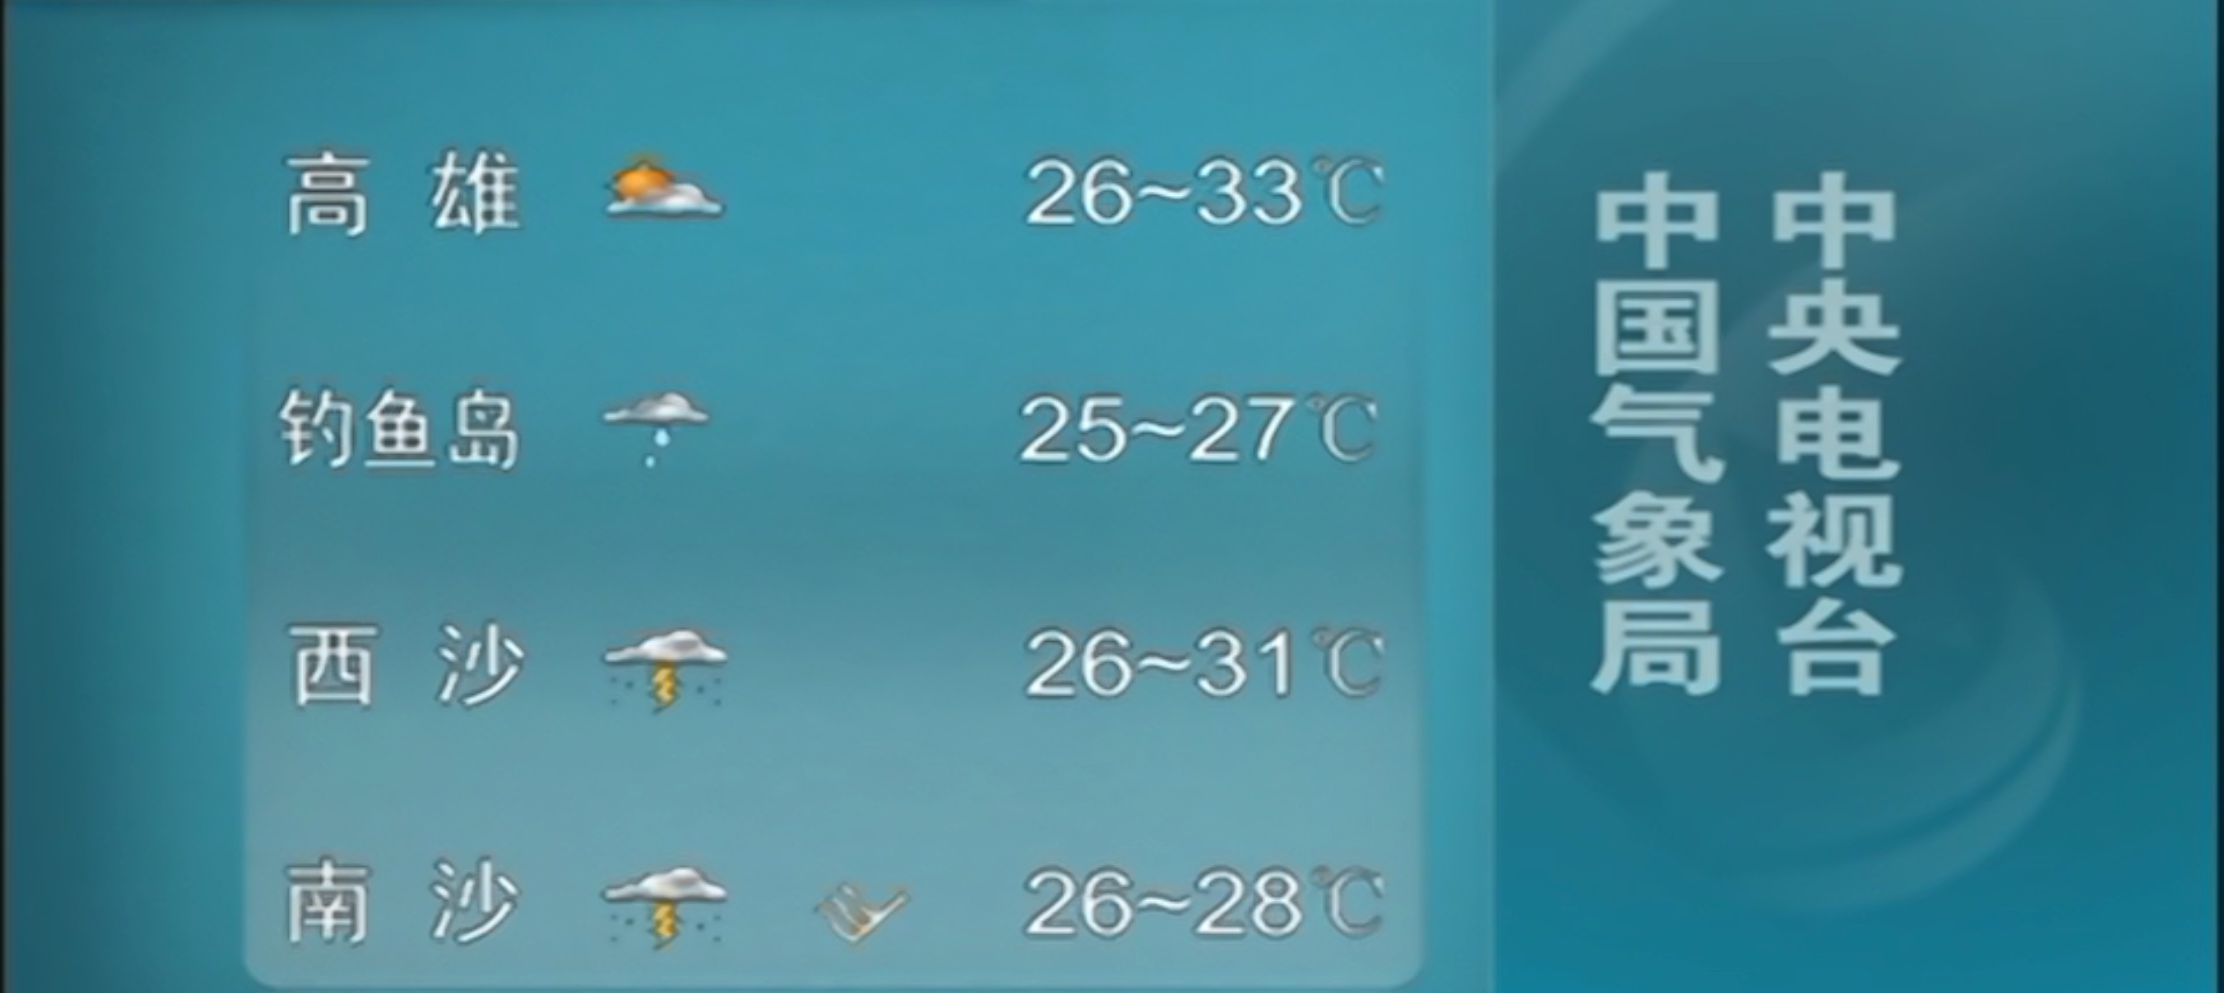 央視首次播出釣魚島天氣預報